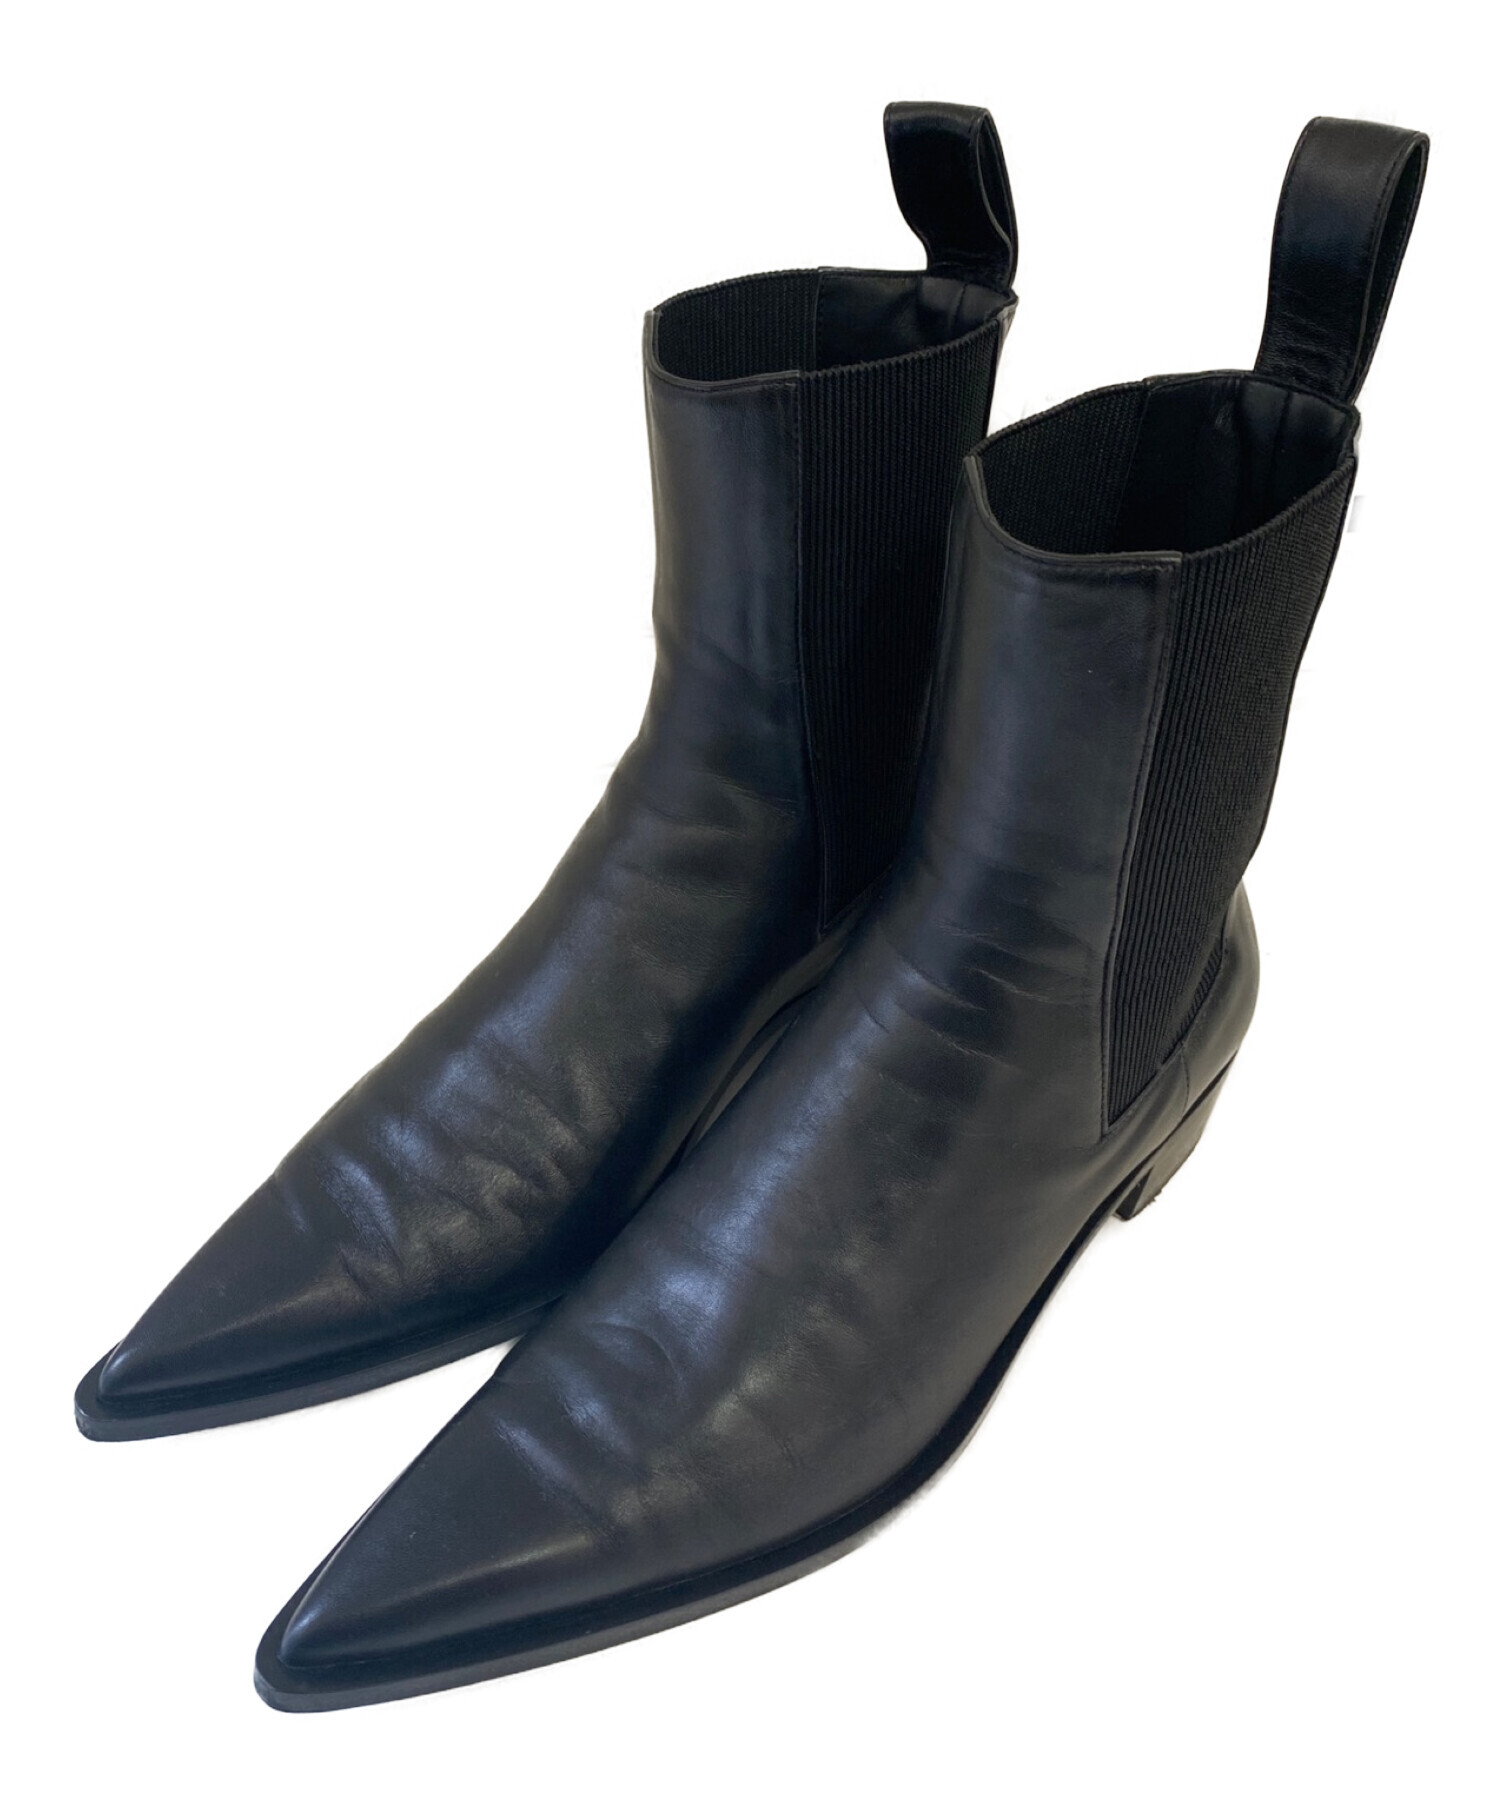 36,000円peter do everyday leather boots ヒールブーツ